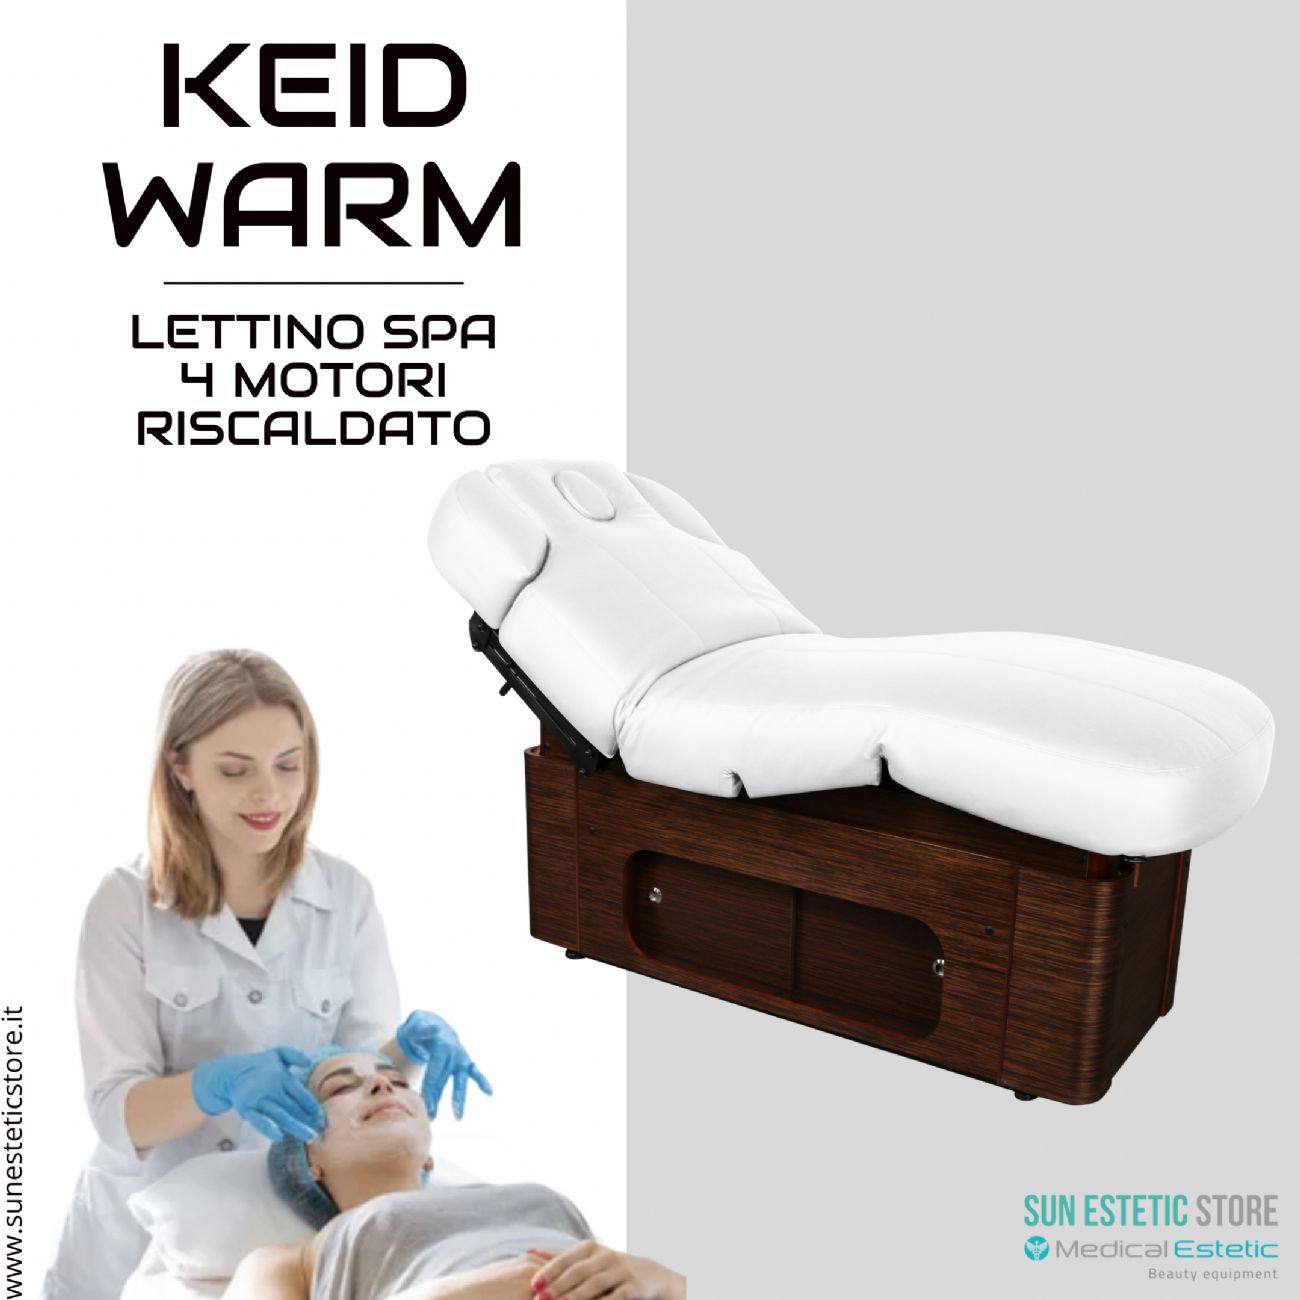 KEID WARM Lettino massaggio SPA in legno 4 motori termoriscaldato con cassettiera portaoggetti